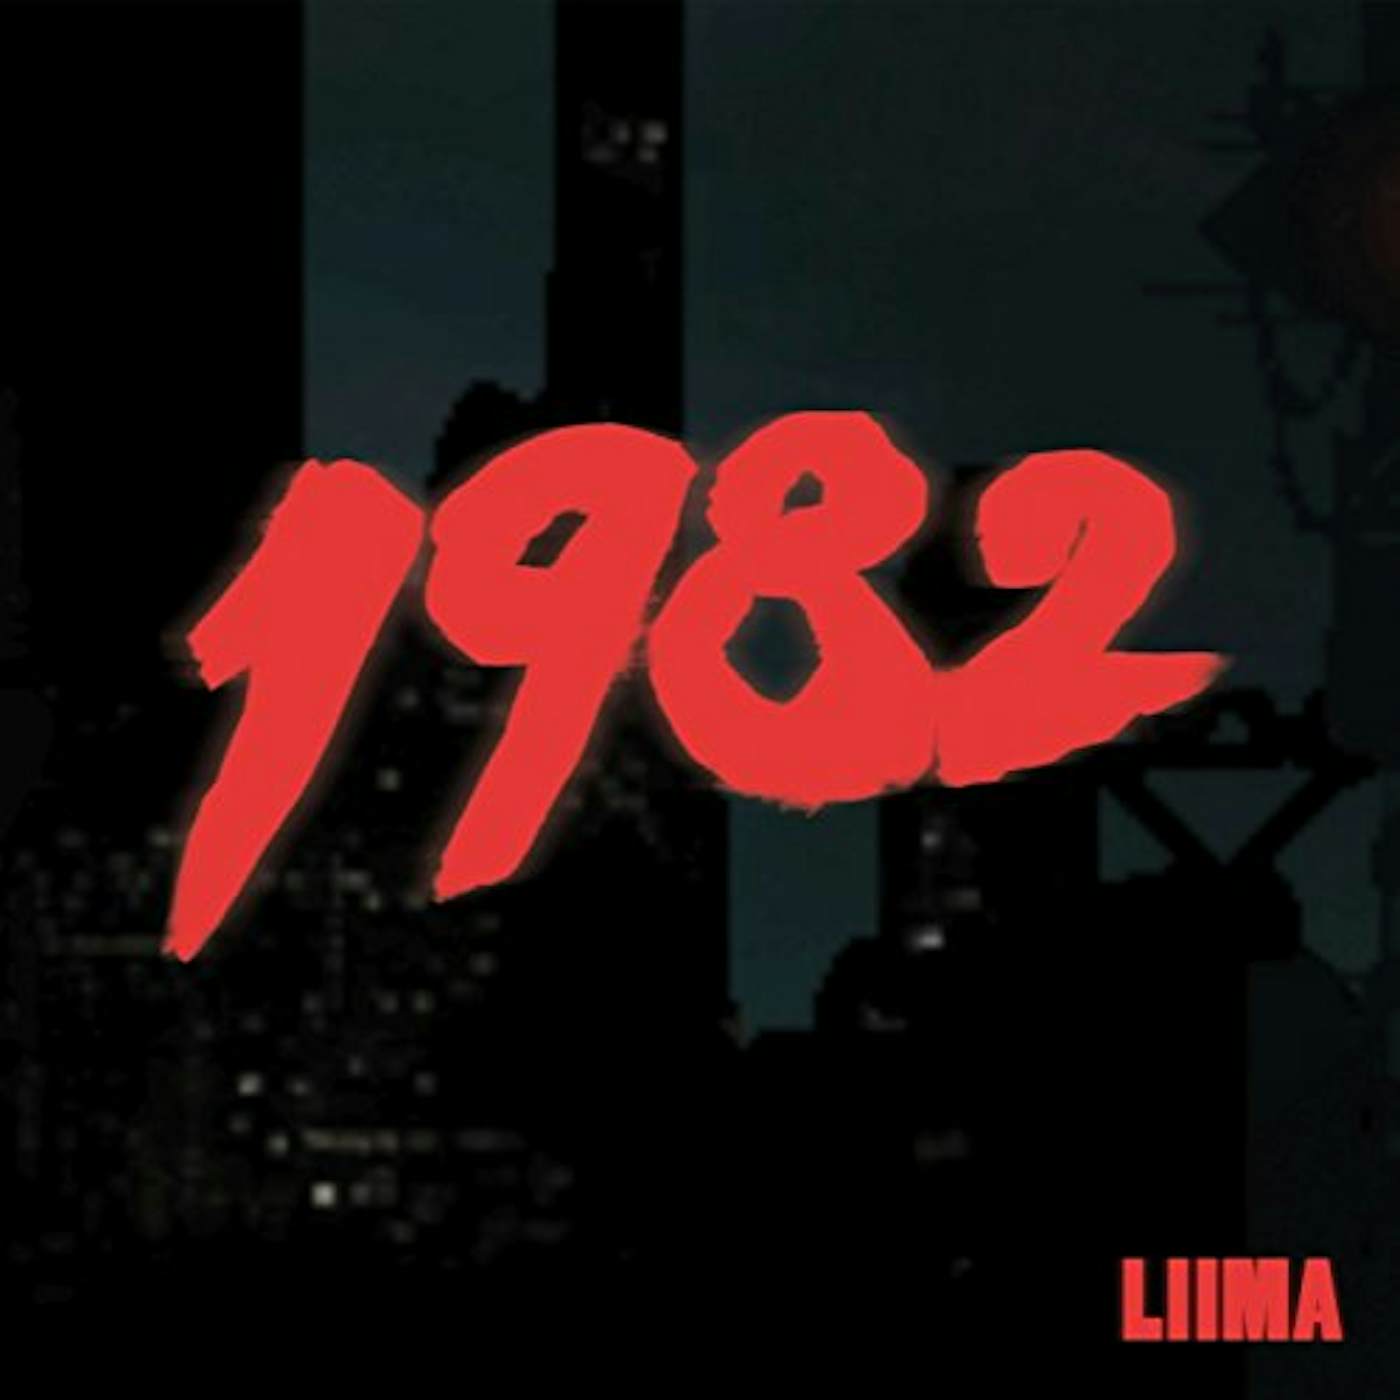 Liima 1982 CD